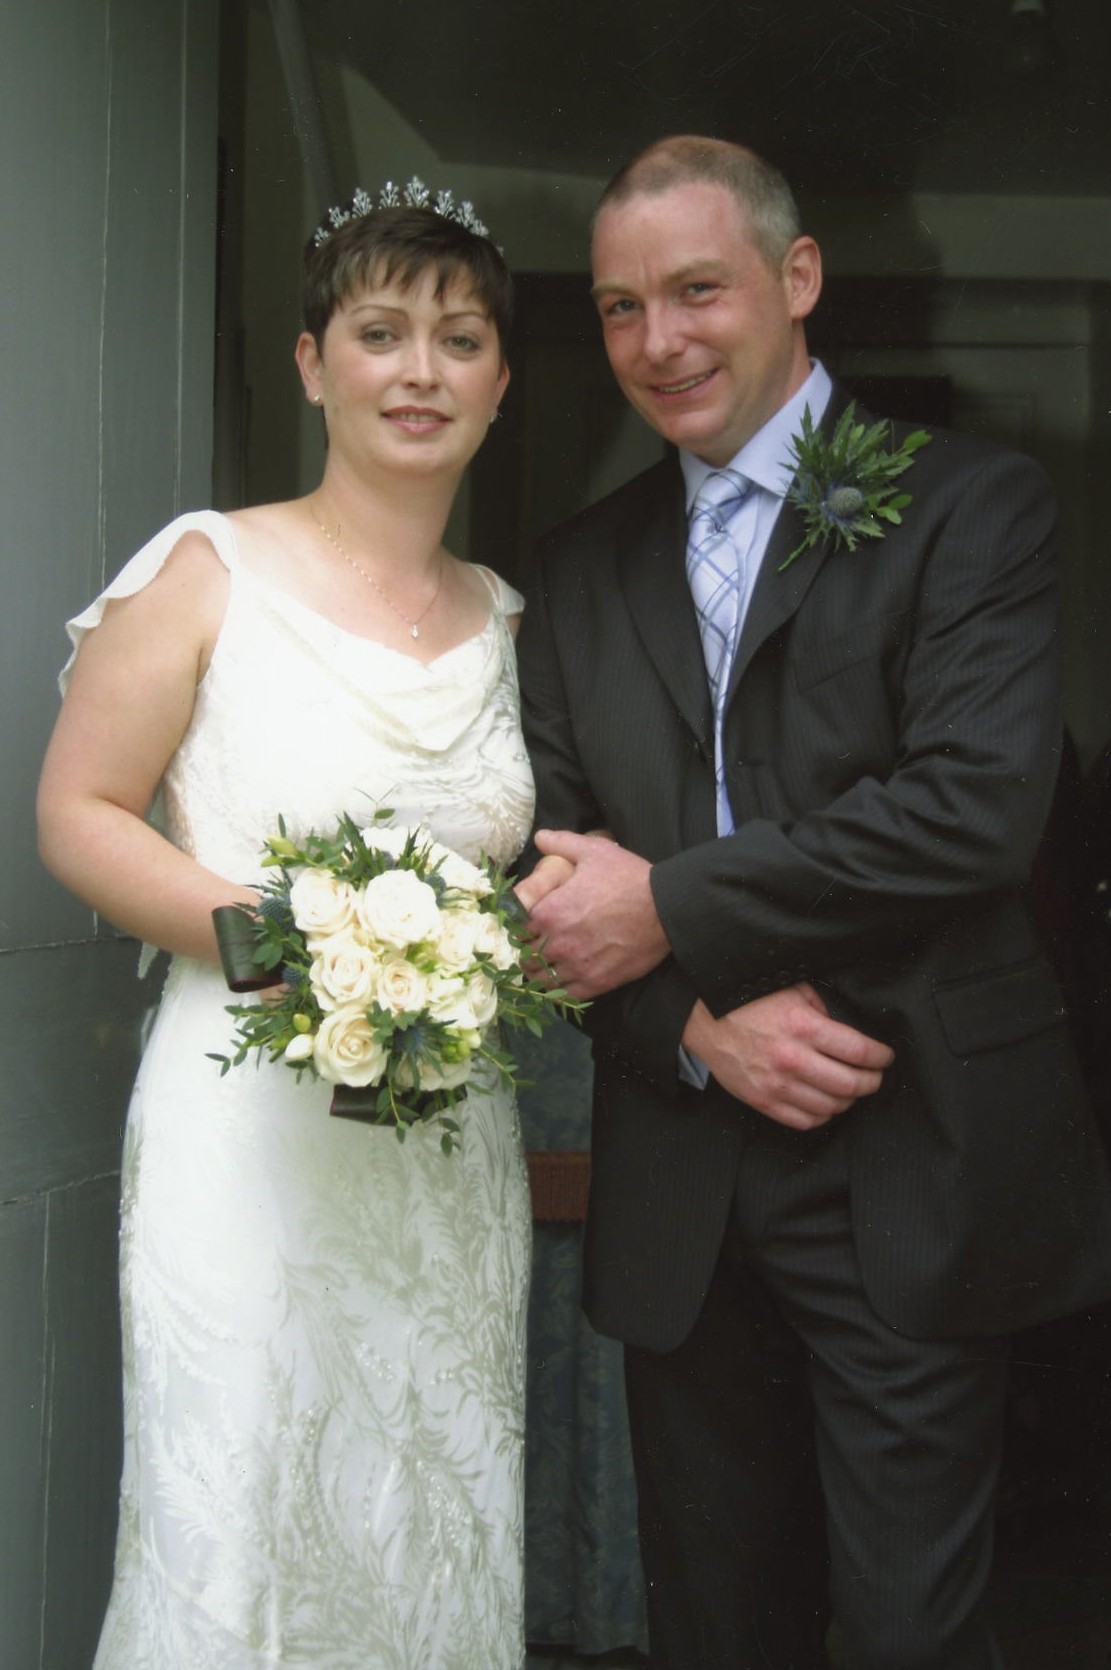 Geoff Mannian & Aileen Baker's Wedding